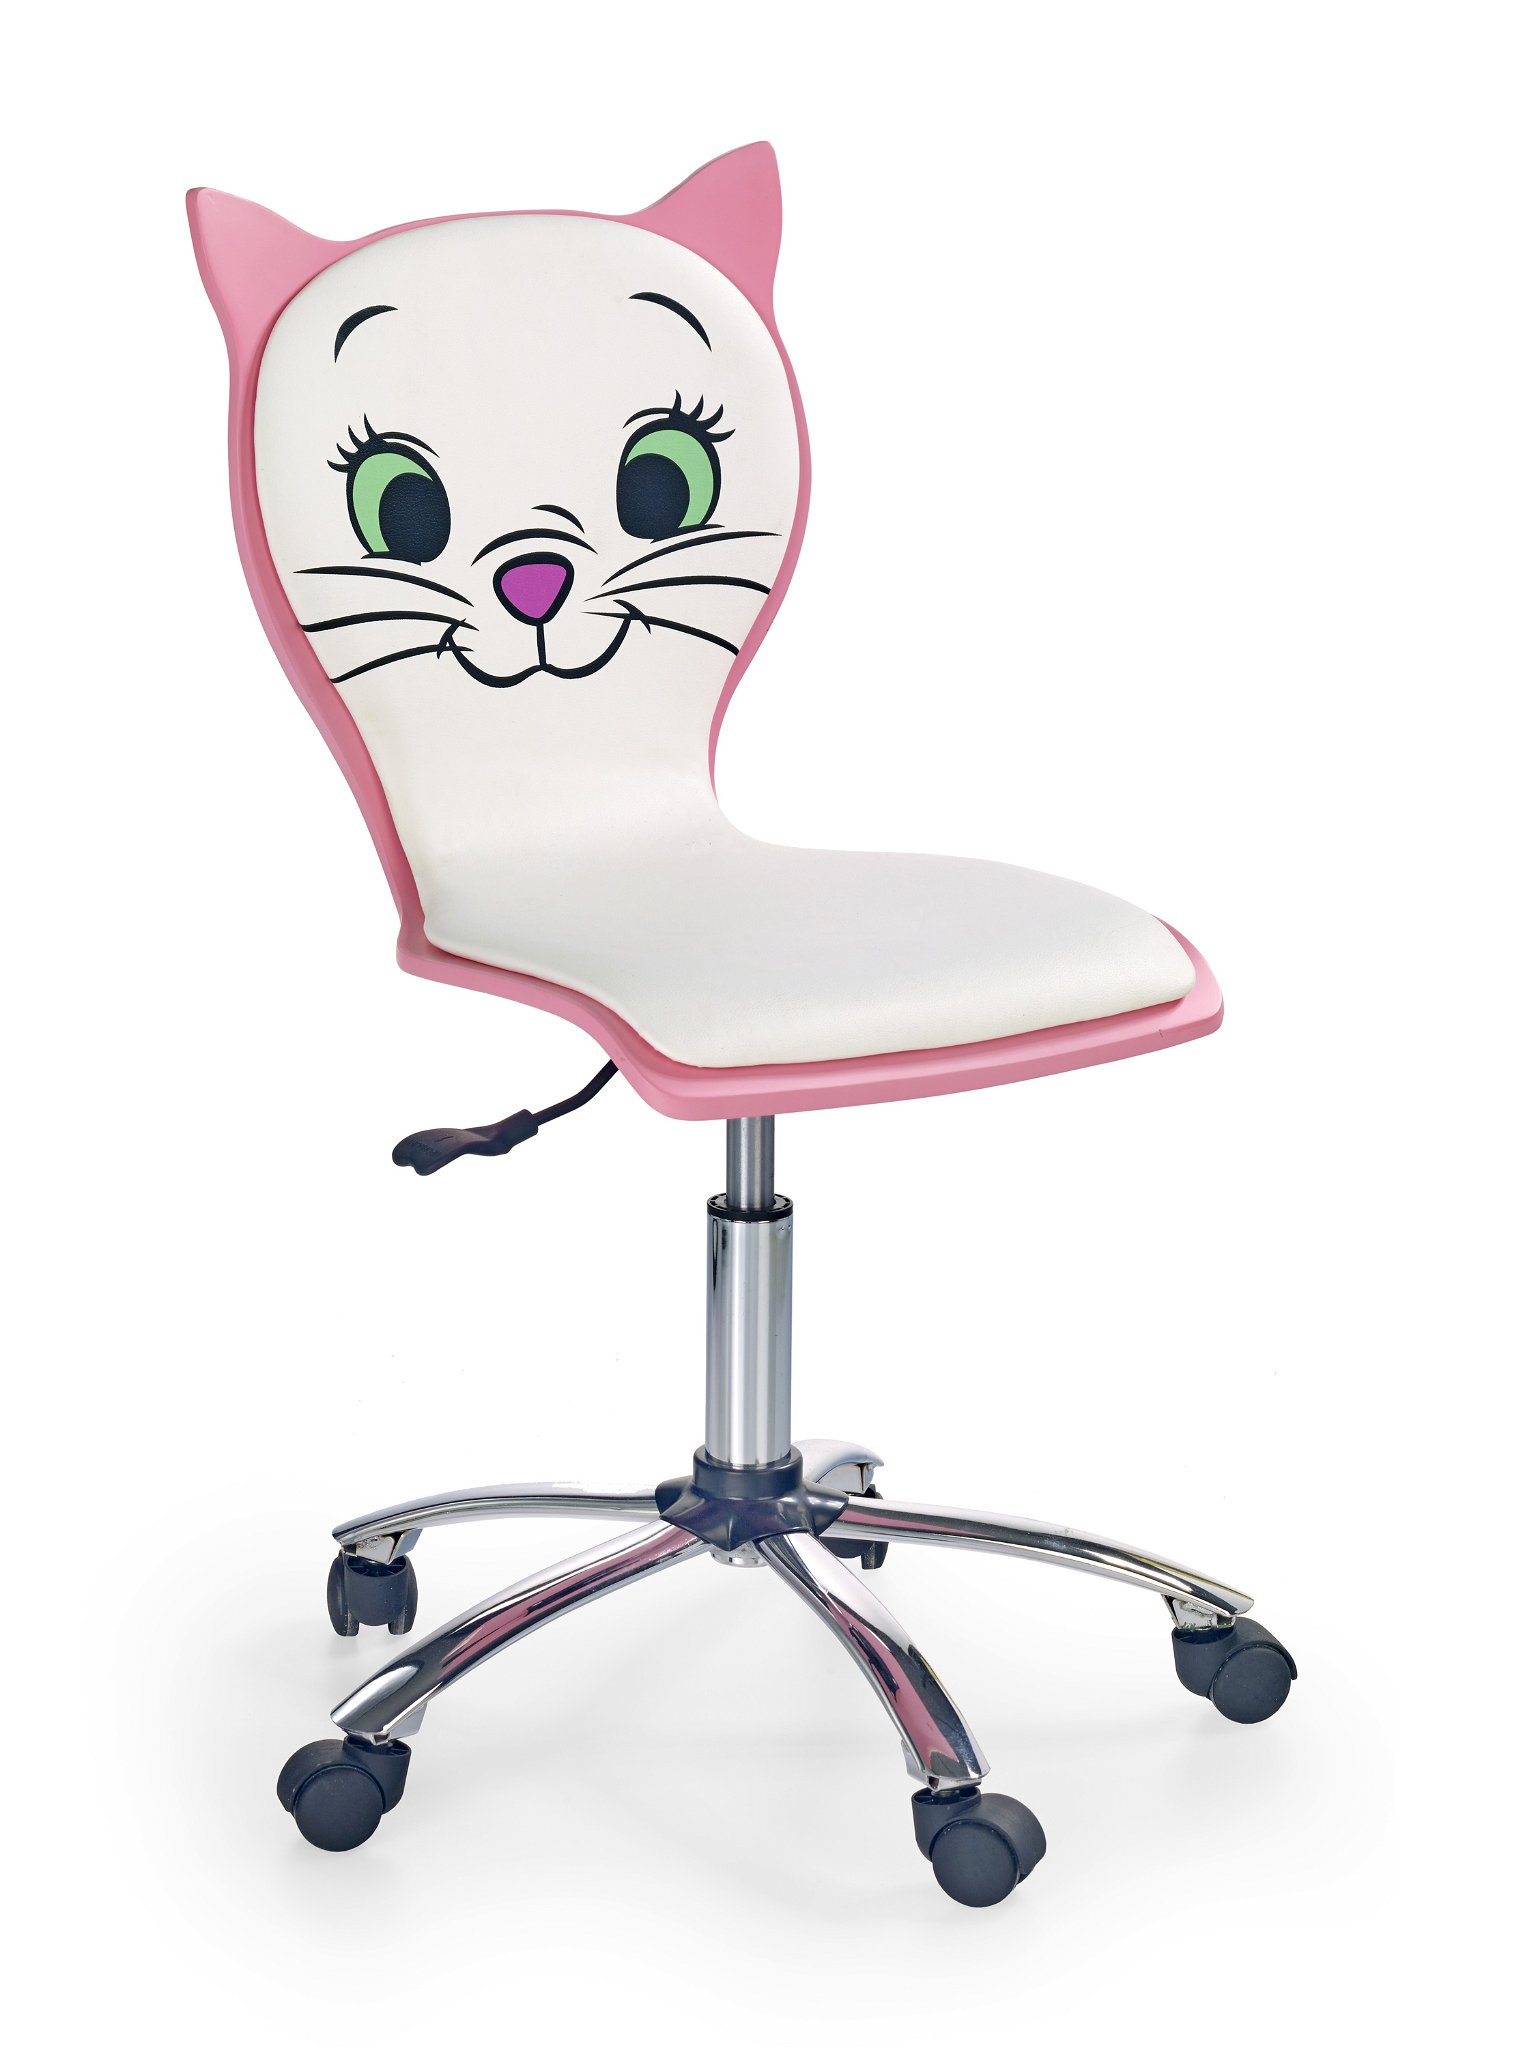 Vaikiška kėdė KITTY 2, balta/rožinė